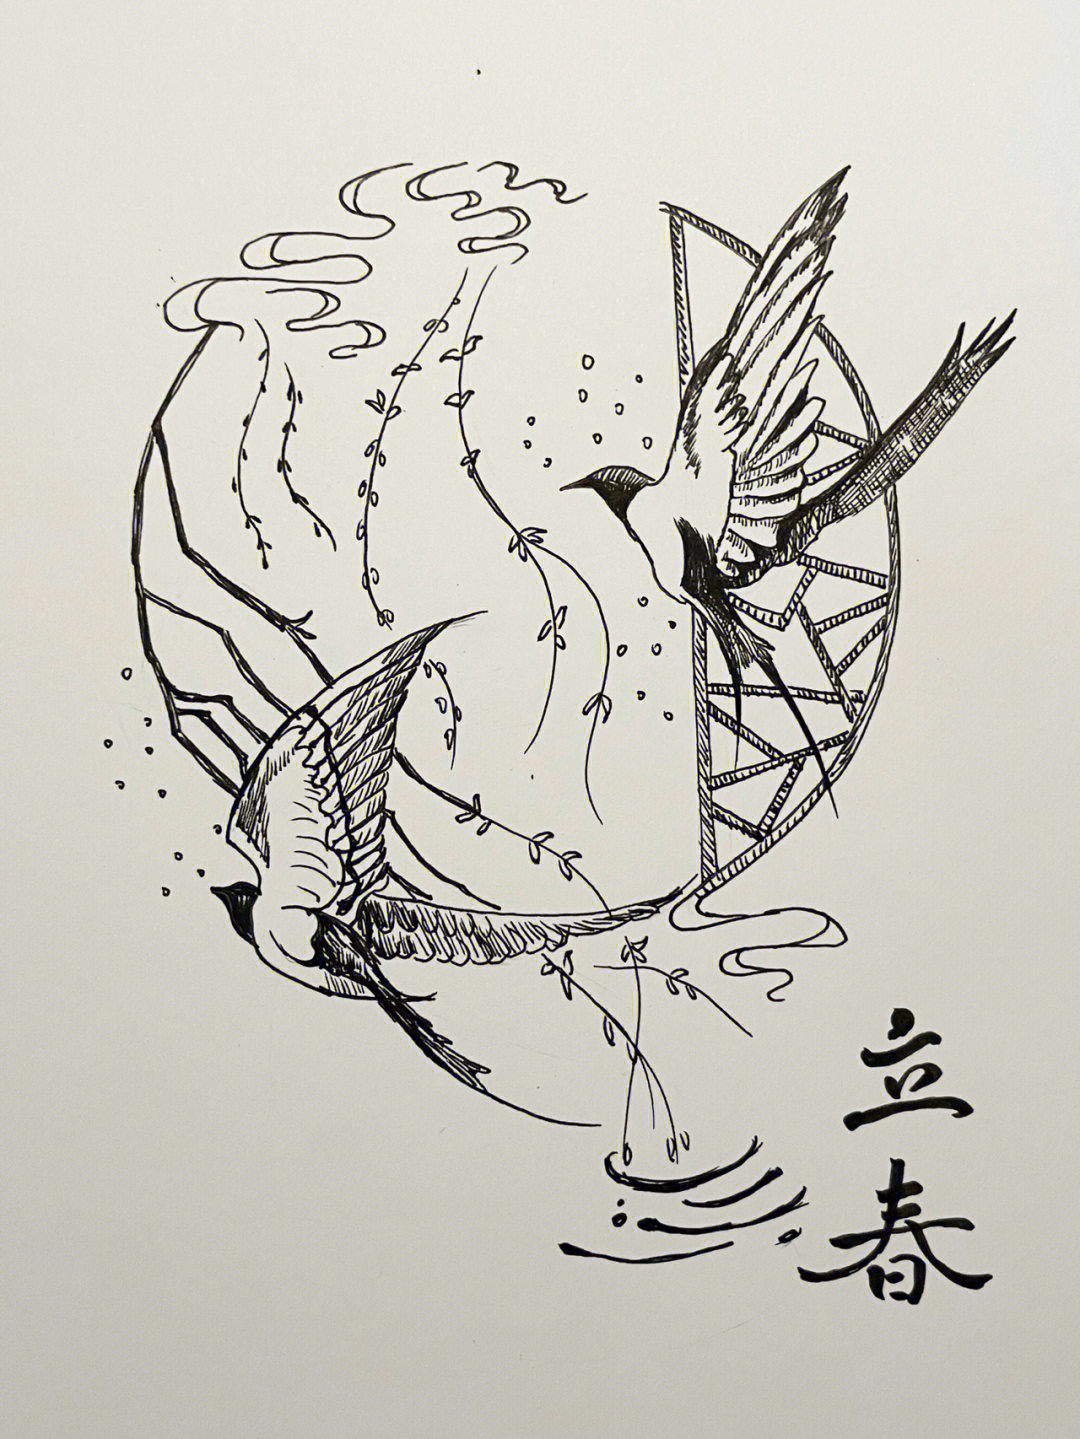 针管笔绘画24二十四节气立春翩舞的燕子